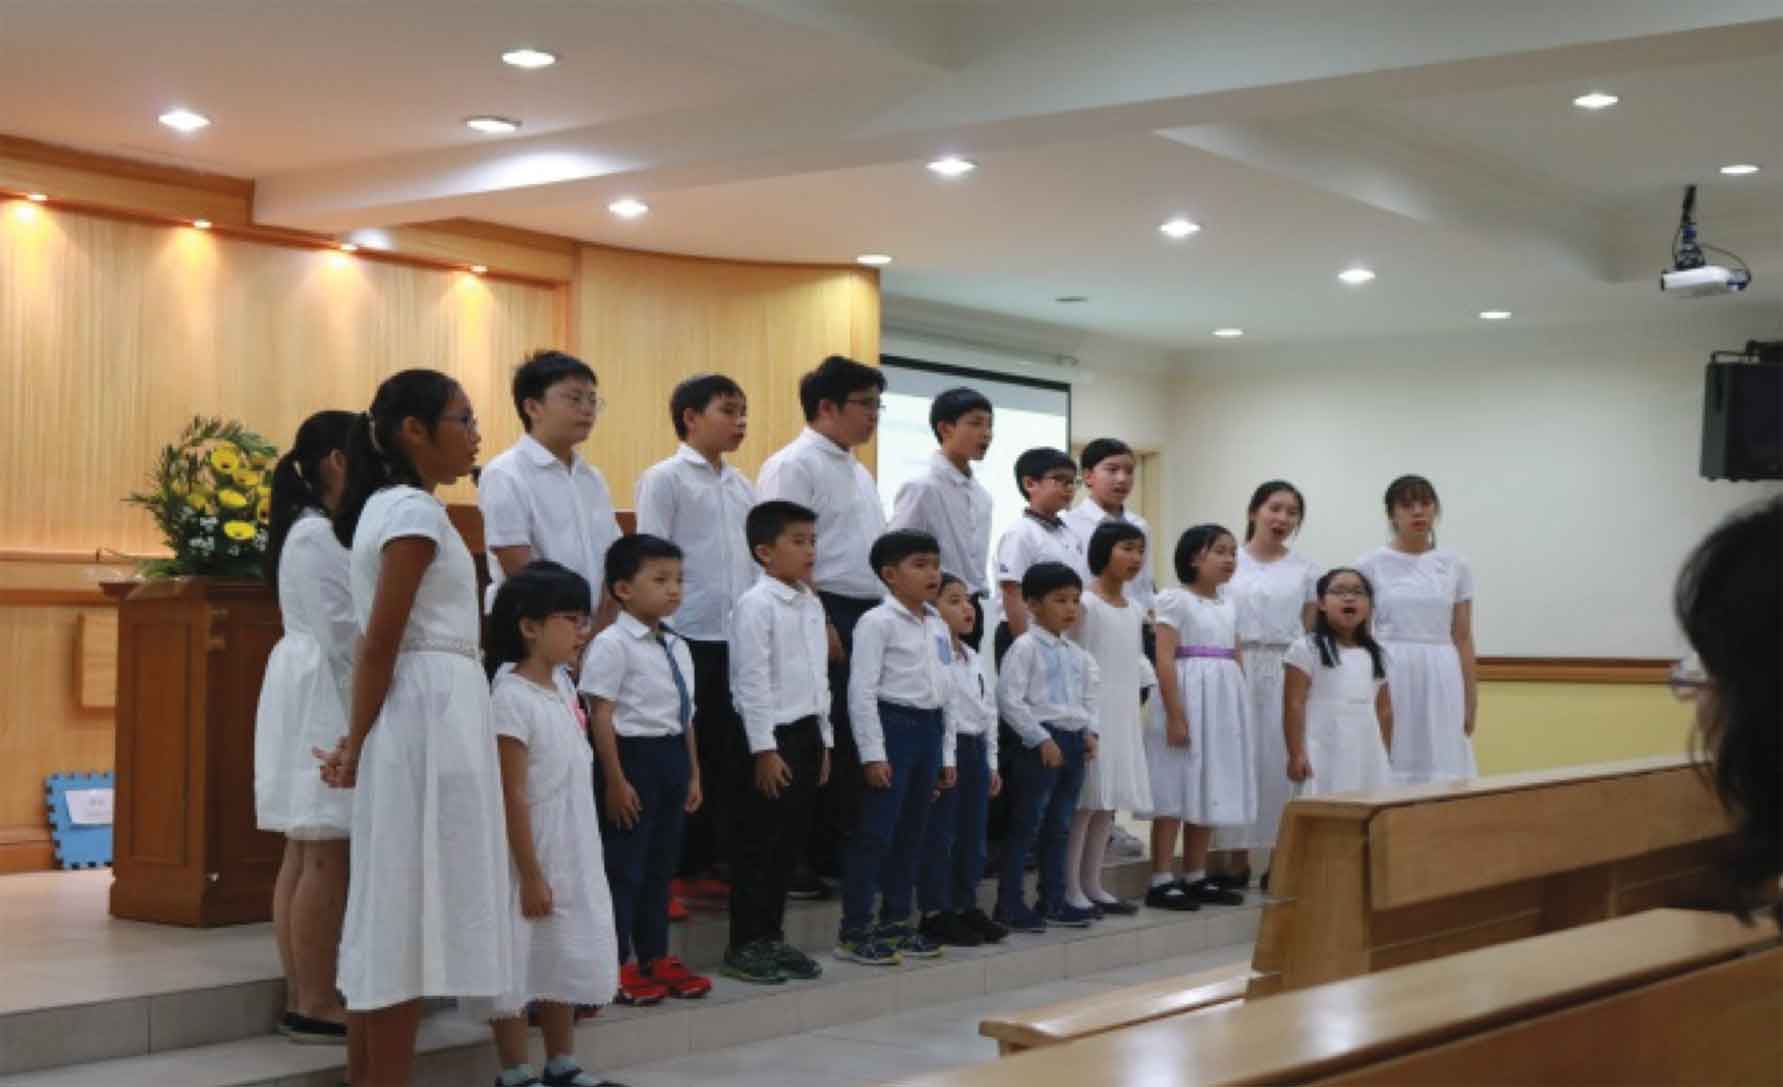 Children Evangelistic Service at Cheras Church